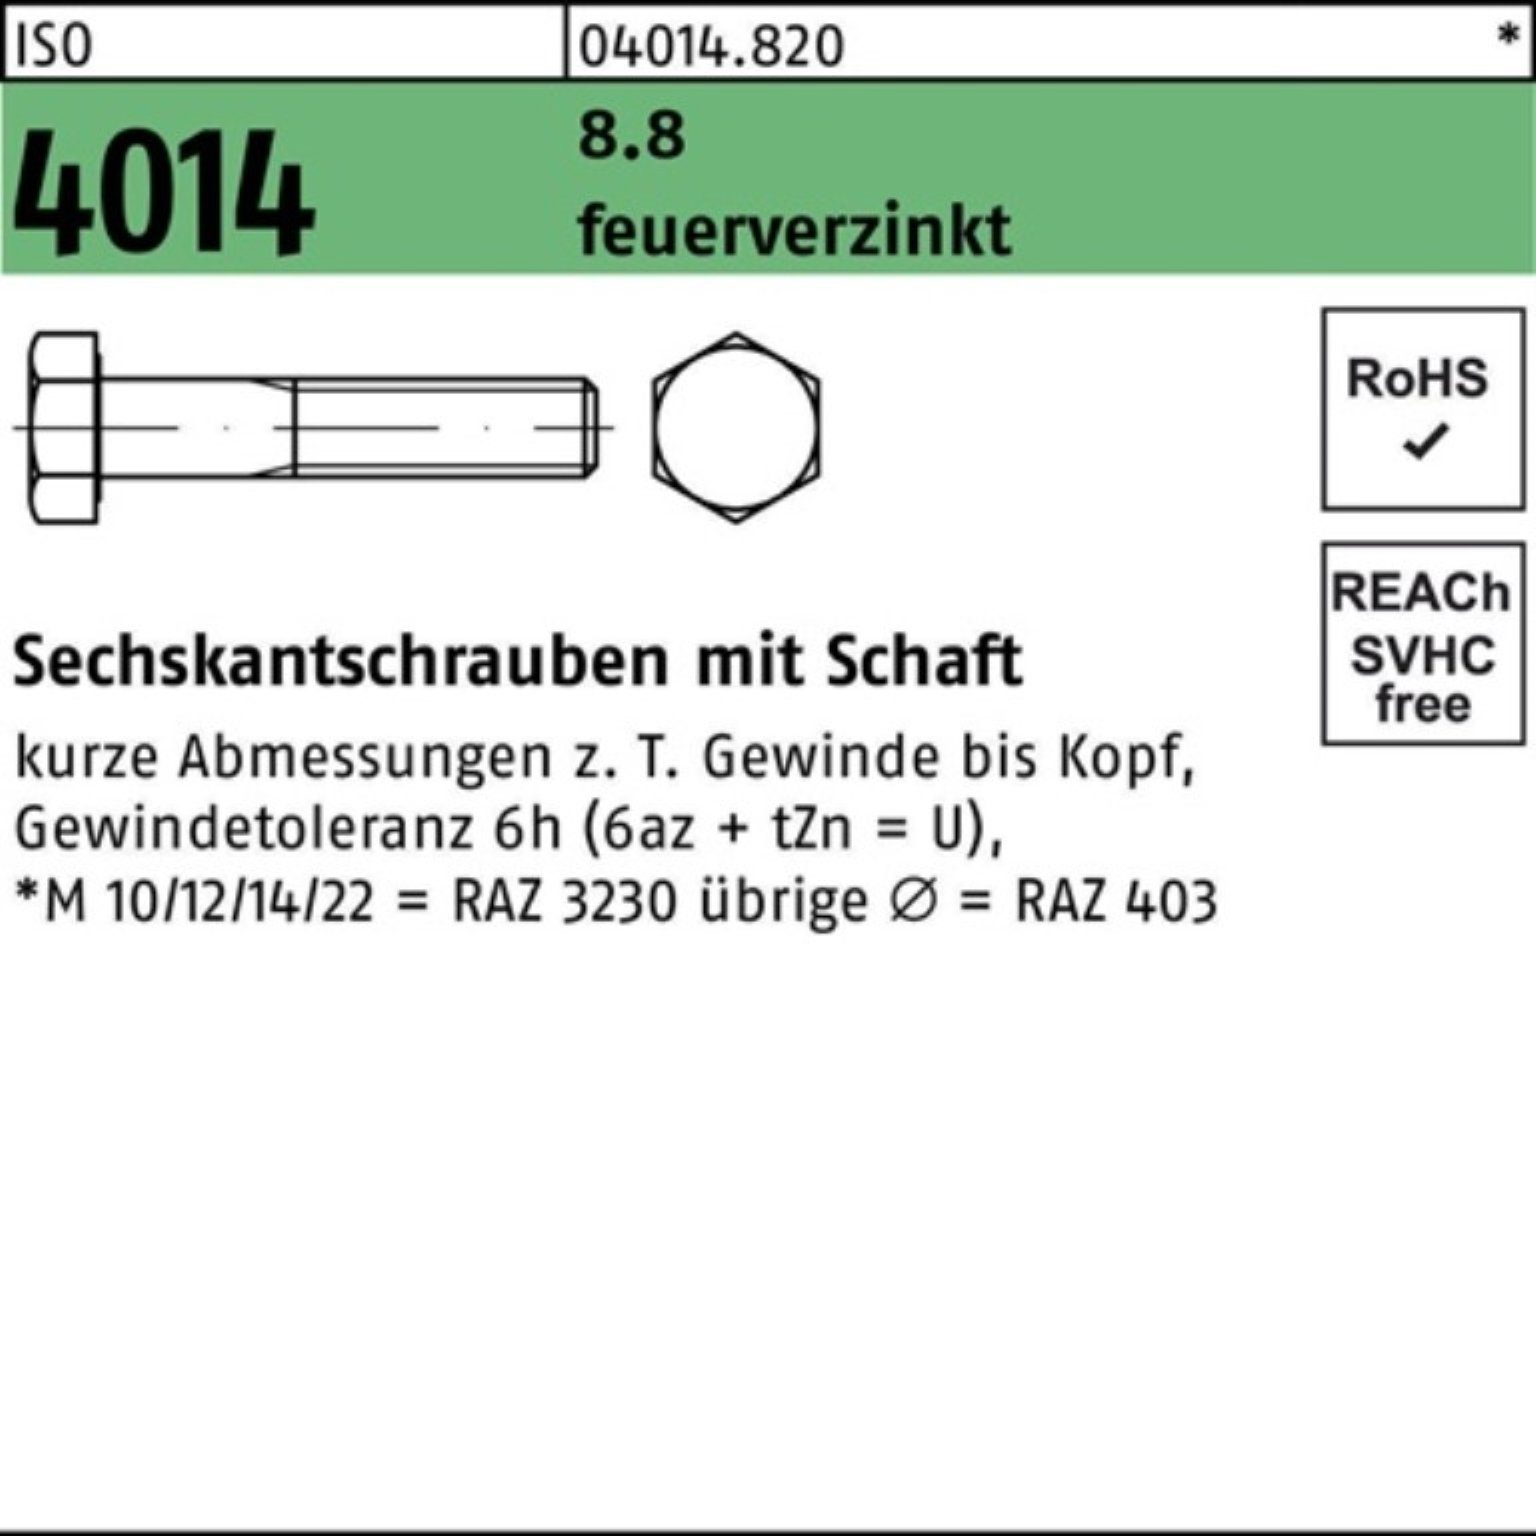 Bufab Sechskantschraube 100er Pack Sechskantschraube ISO 4014 Schaft M12x 70 8.8 feuerverz. 50